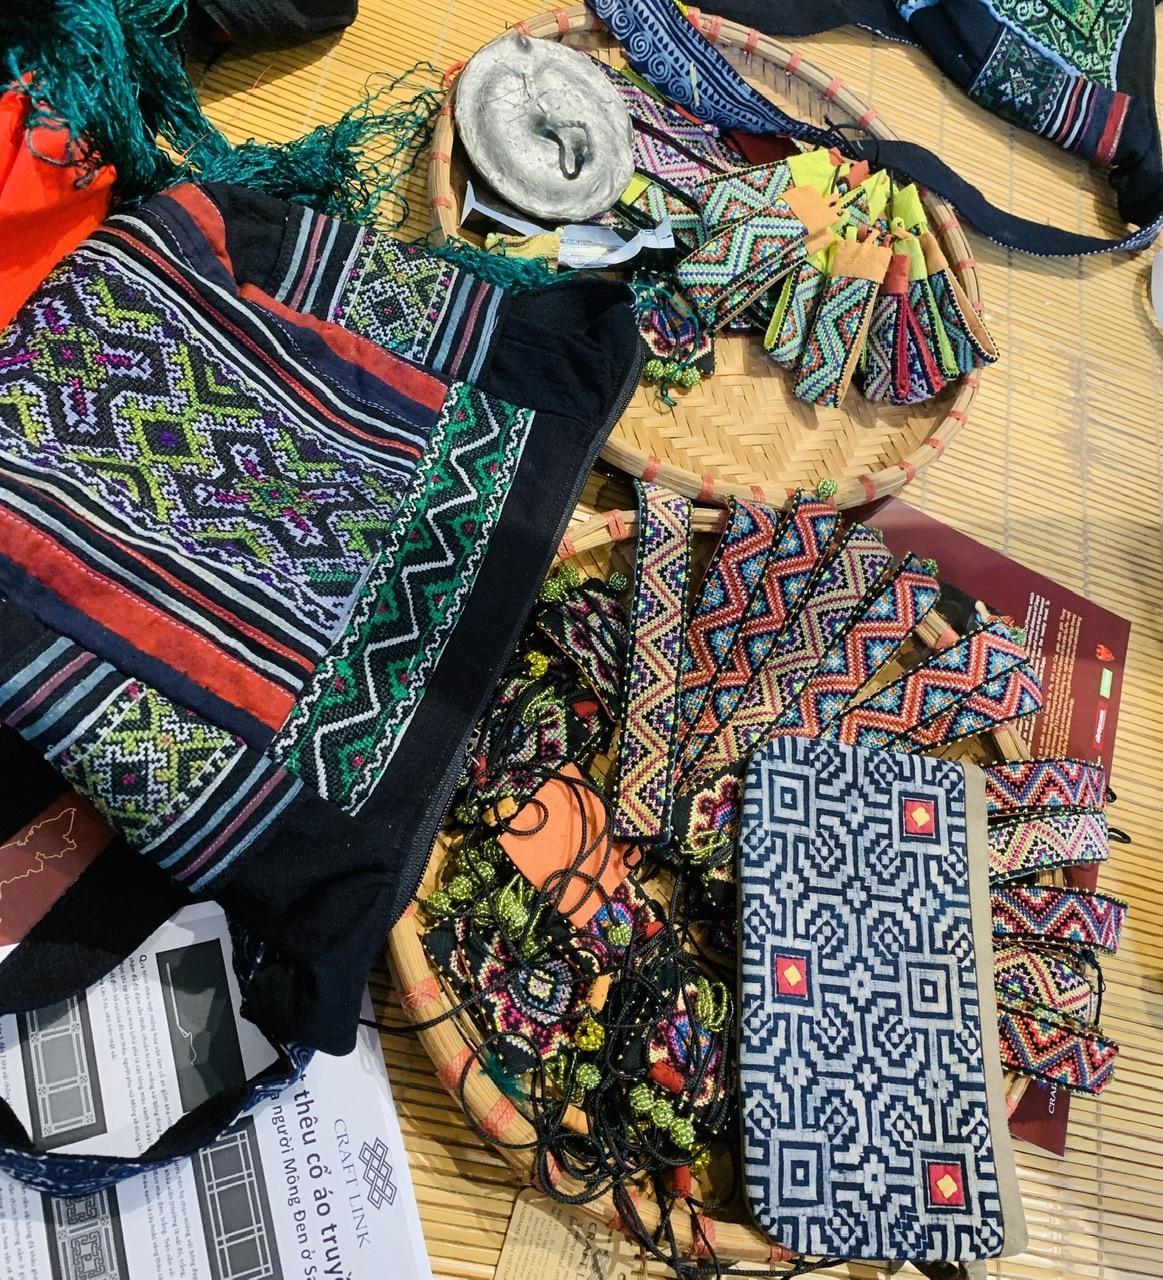 Không chỉ sử dụng họa tiết hoa văn trên trang phục, người Mông đen còn khéo léo dùng các họa tiết này để tạo nên nhiều sản phẩm độc đáo, có tính ứng dụng cao, là món quà lưu niệm mang đậm văn hóa dân tộc Mông